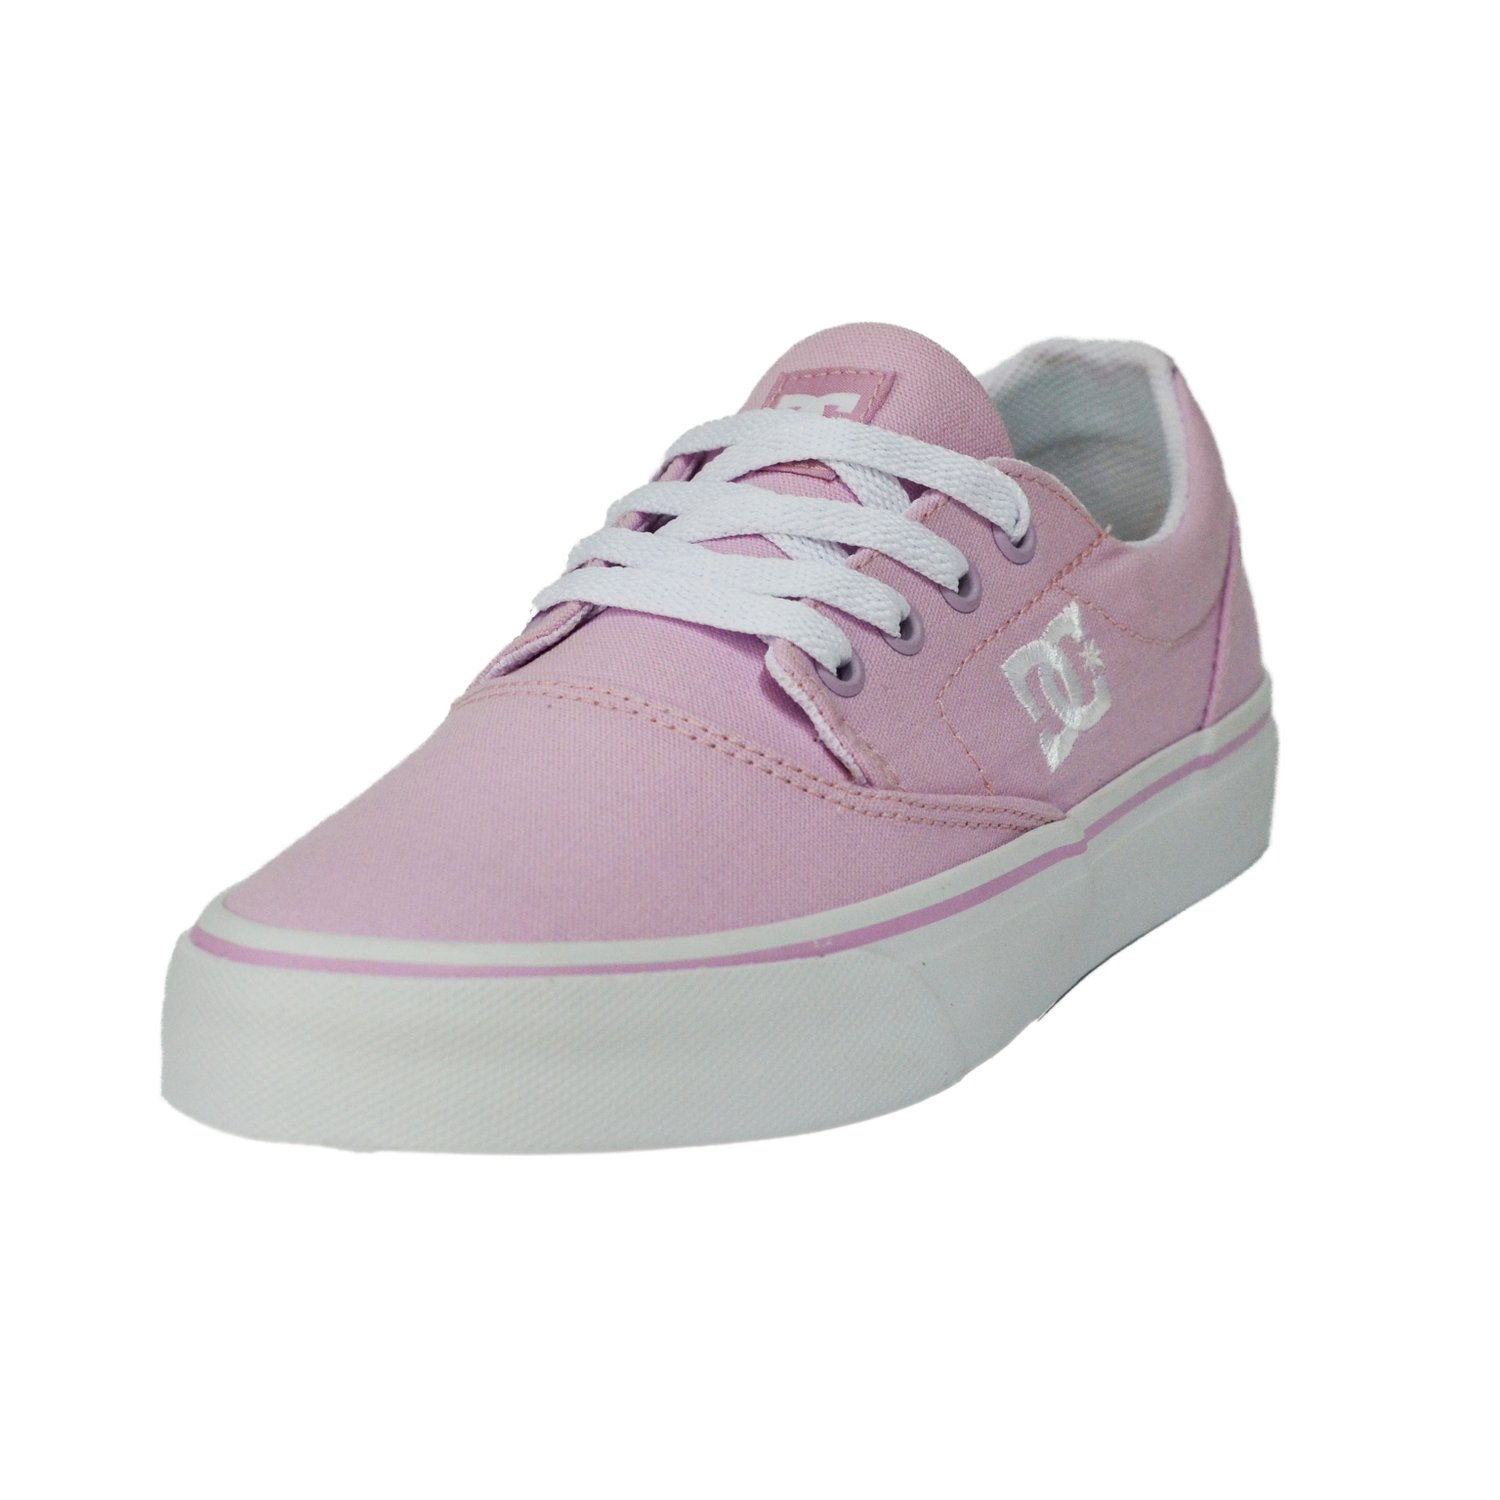 dc shoes tenis rosa